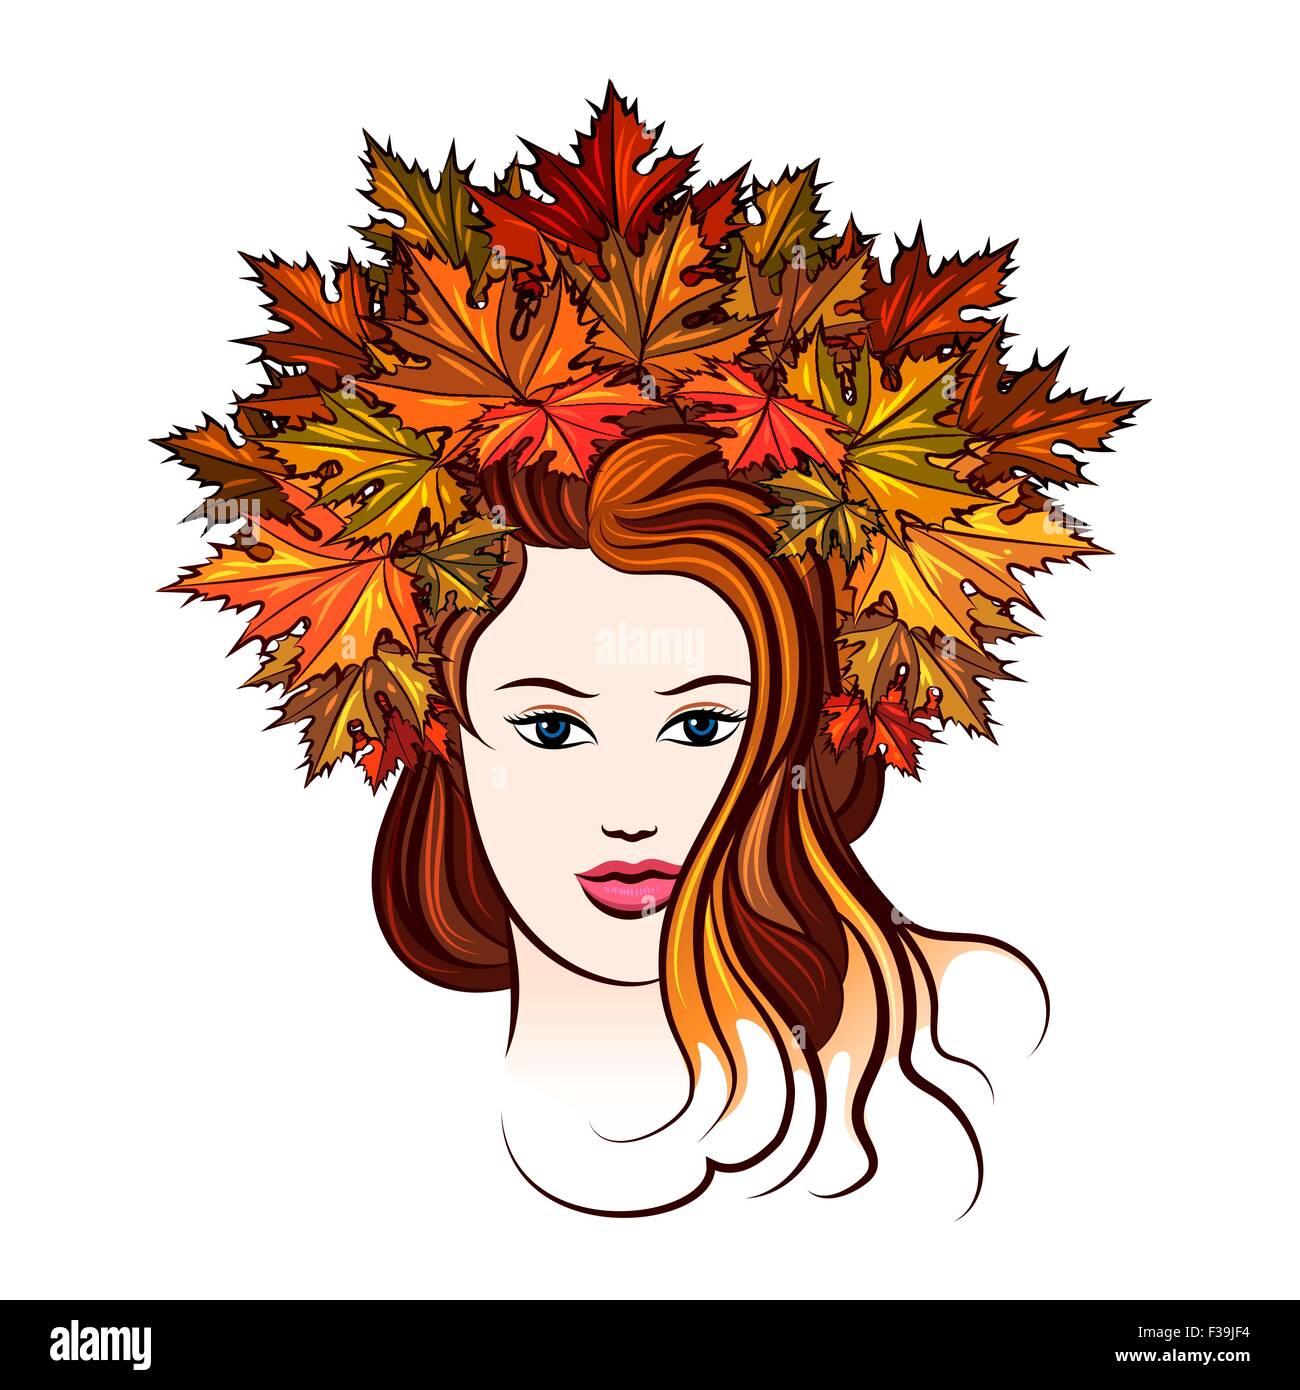 Schönes Mädchen in einem Kranz von roten und gelben Herbst Ahorn Blätter. Isoliert auf weiss. Stock Vektor